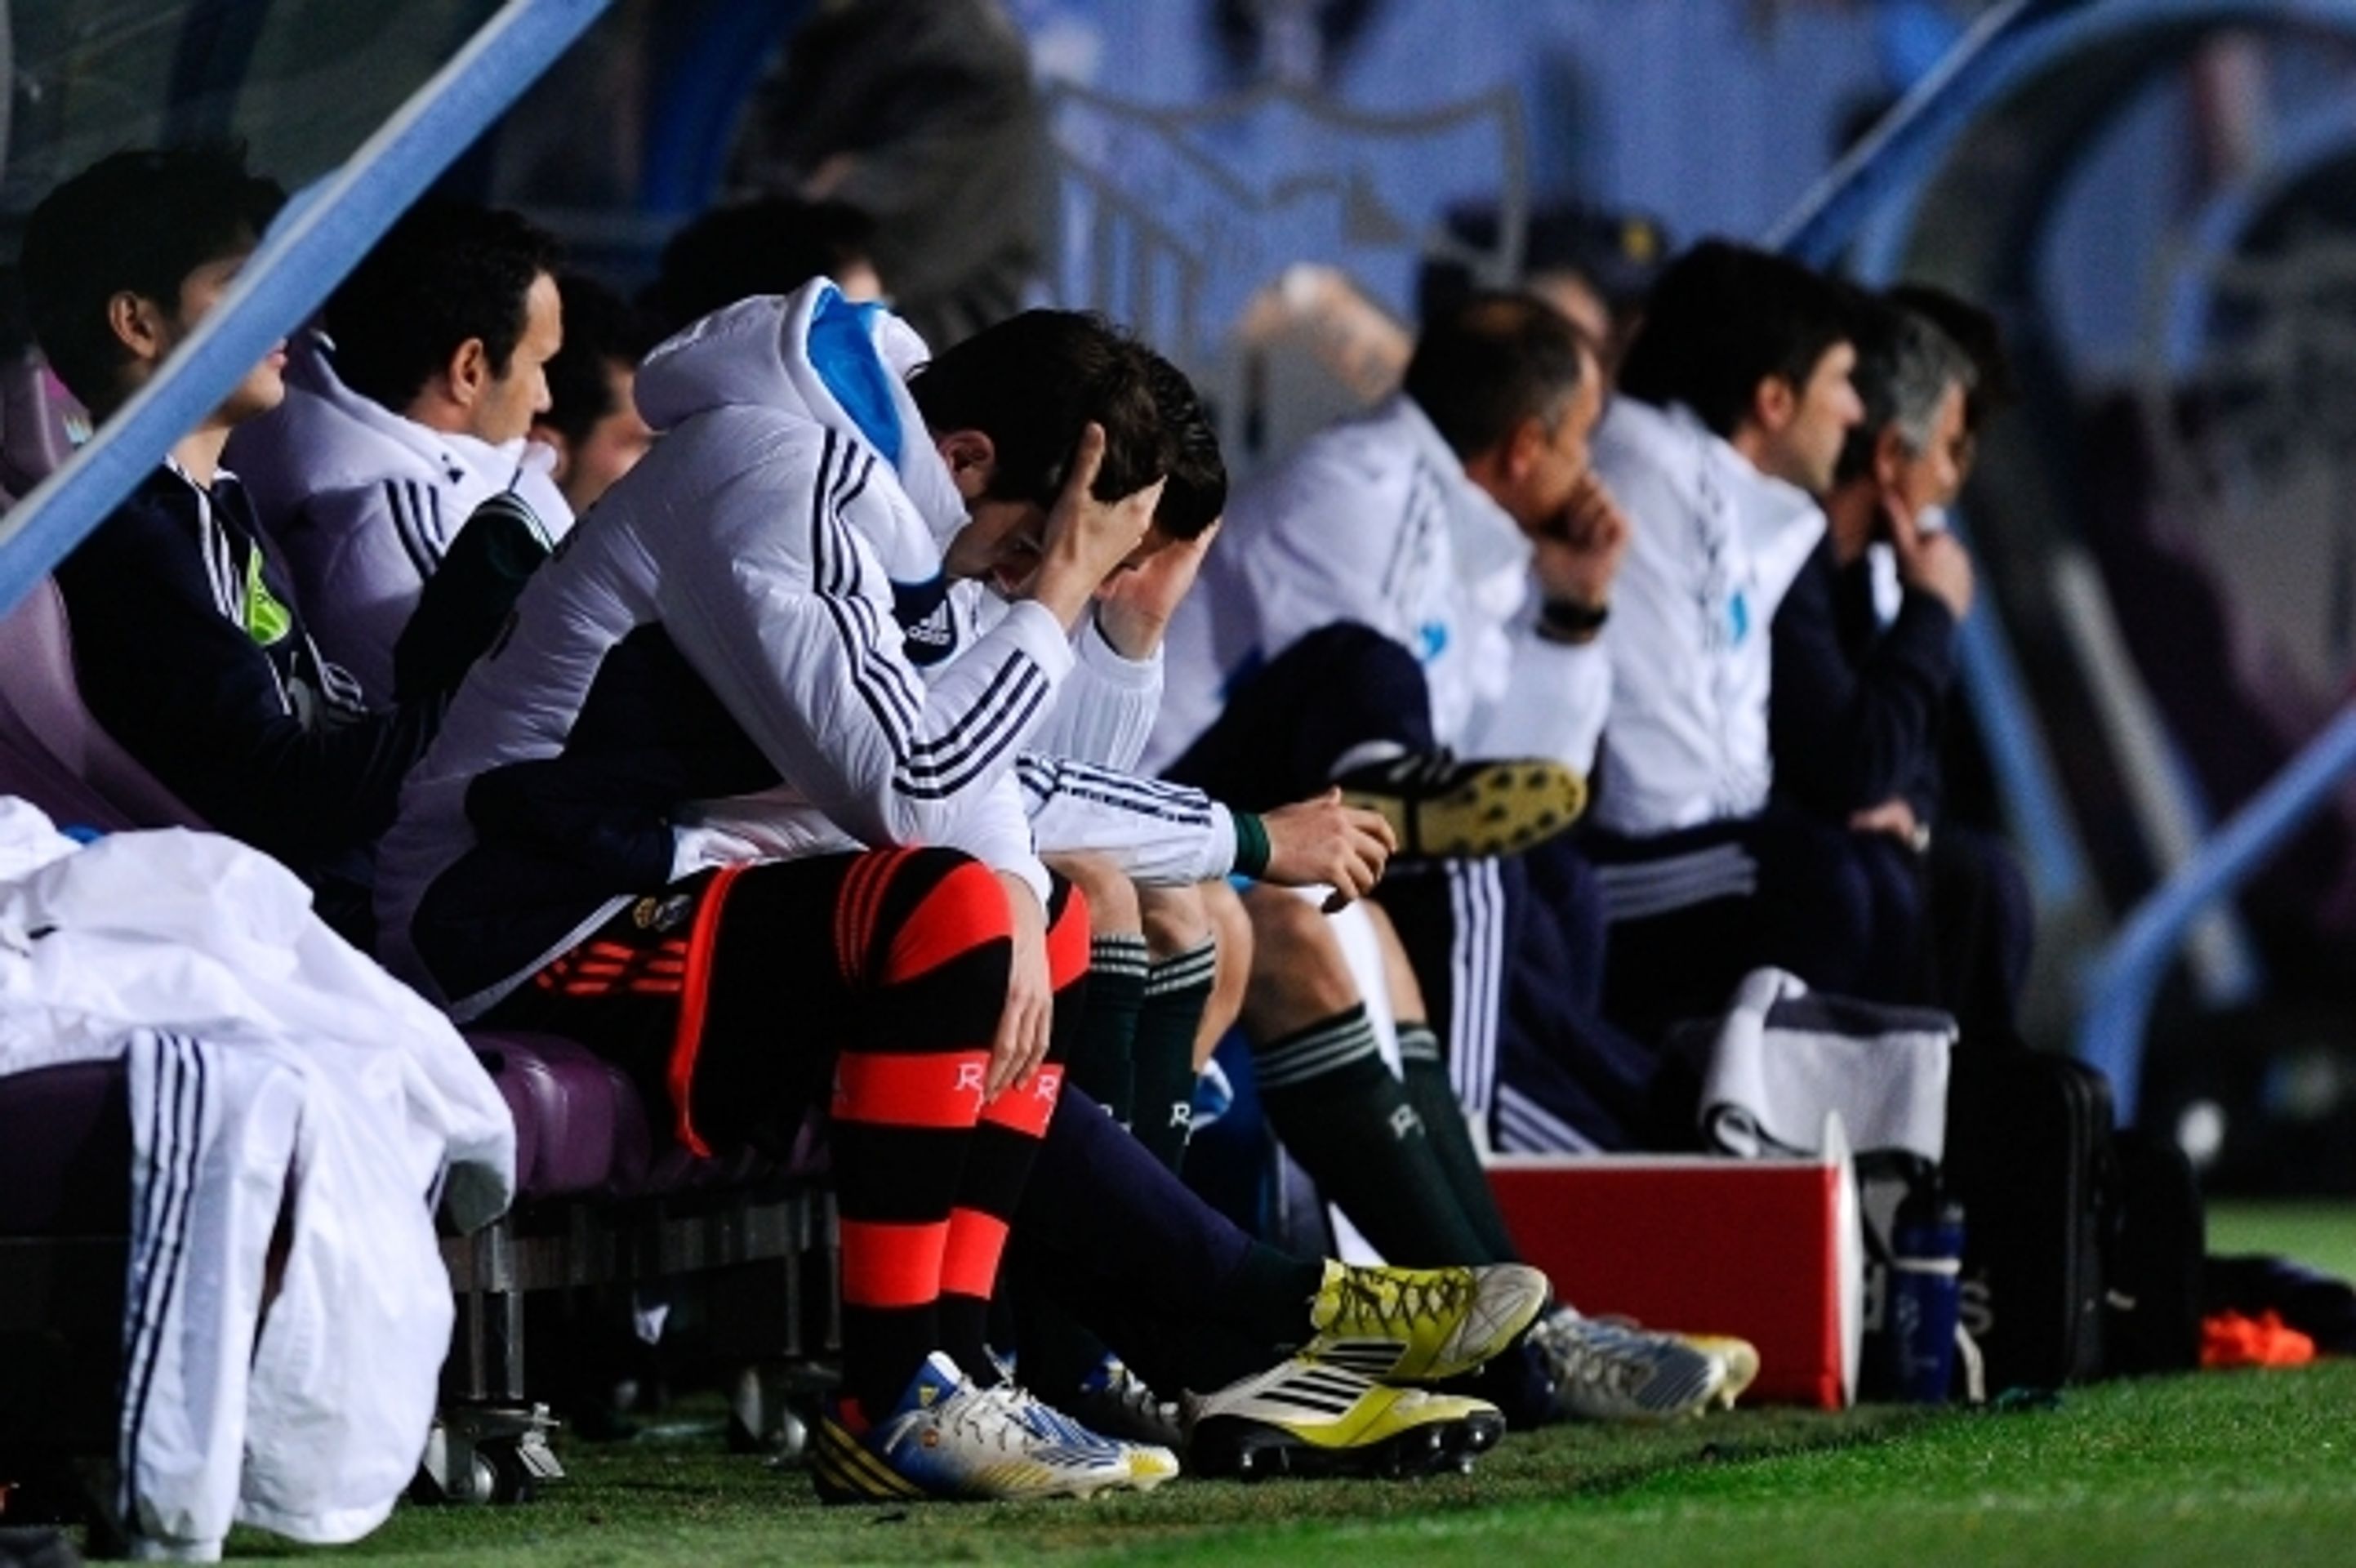 Iker Casillas a jeho reakce na lavičce Realu - 2 - GALERIE: Iker Casillas na lavičce Realu (4/6)